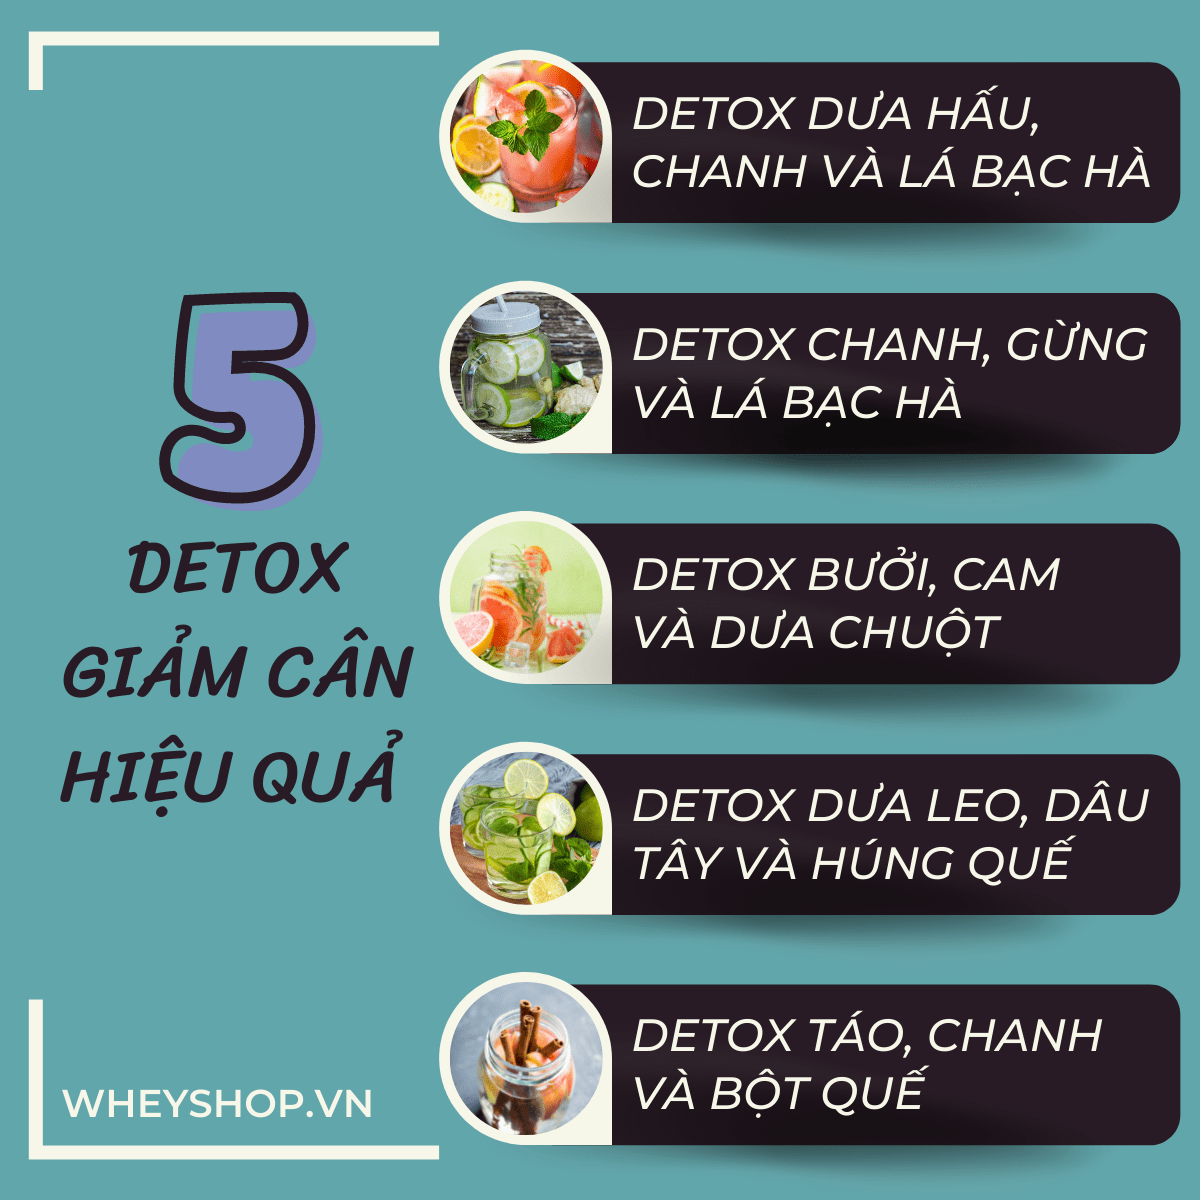 Hiện nay, chủ đề detox giảm cân bằng nước trái cây vẫn là chủ đề nóng trên các hội nhóm, các diễn đàn của chị em phụ nữ. Nước detox giúp cơ thể thải độc,...